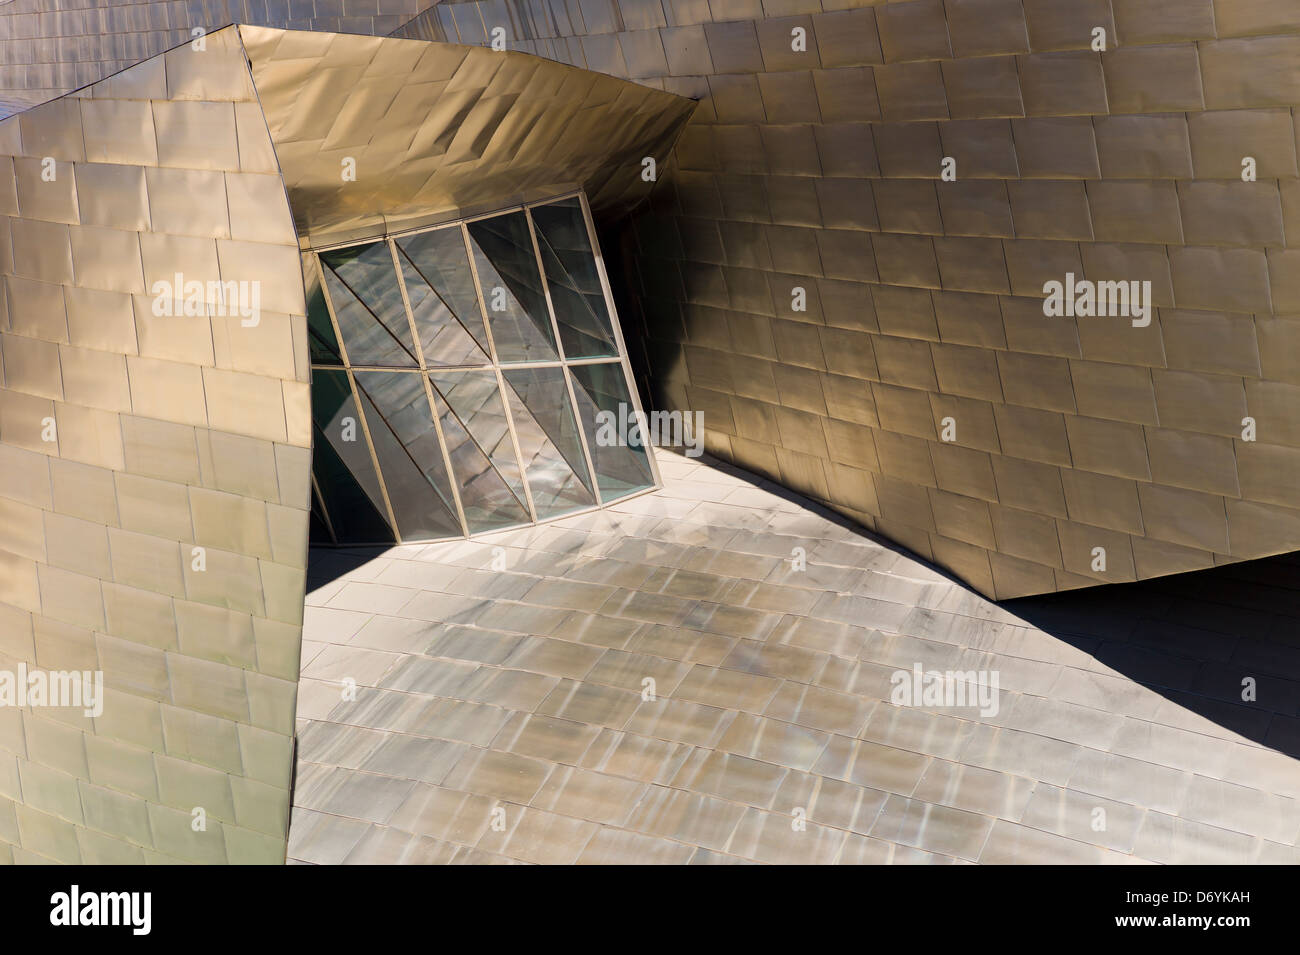 Der Architekt Frank Gehry Guggenheim Museum futuristische Architektur in Titan und Glas bei Bilbao, Baskenland, Spanien Stockfoto